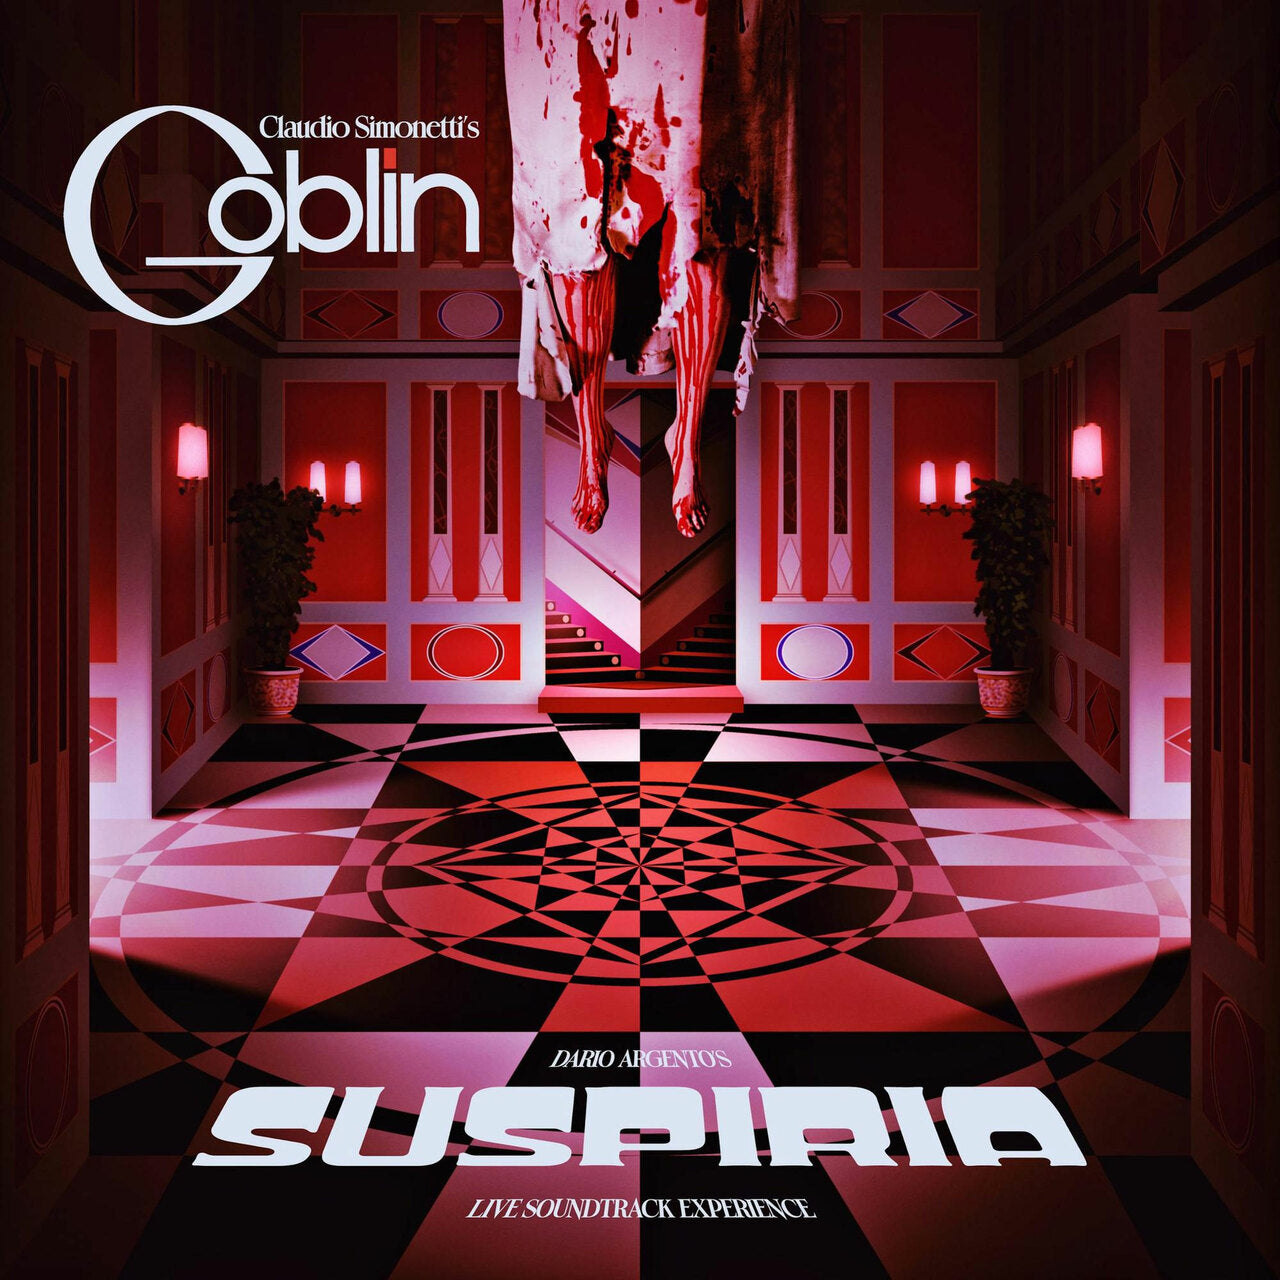 Claudio Simonetti's Goblin - Suspiria - Live Soundtrack Experience [Red Vinyl]